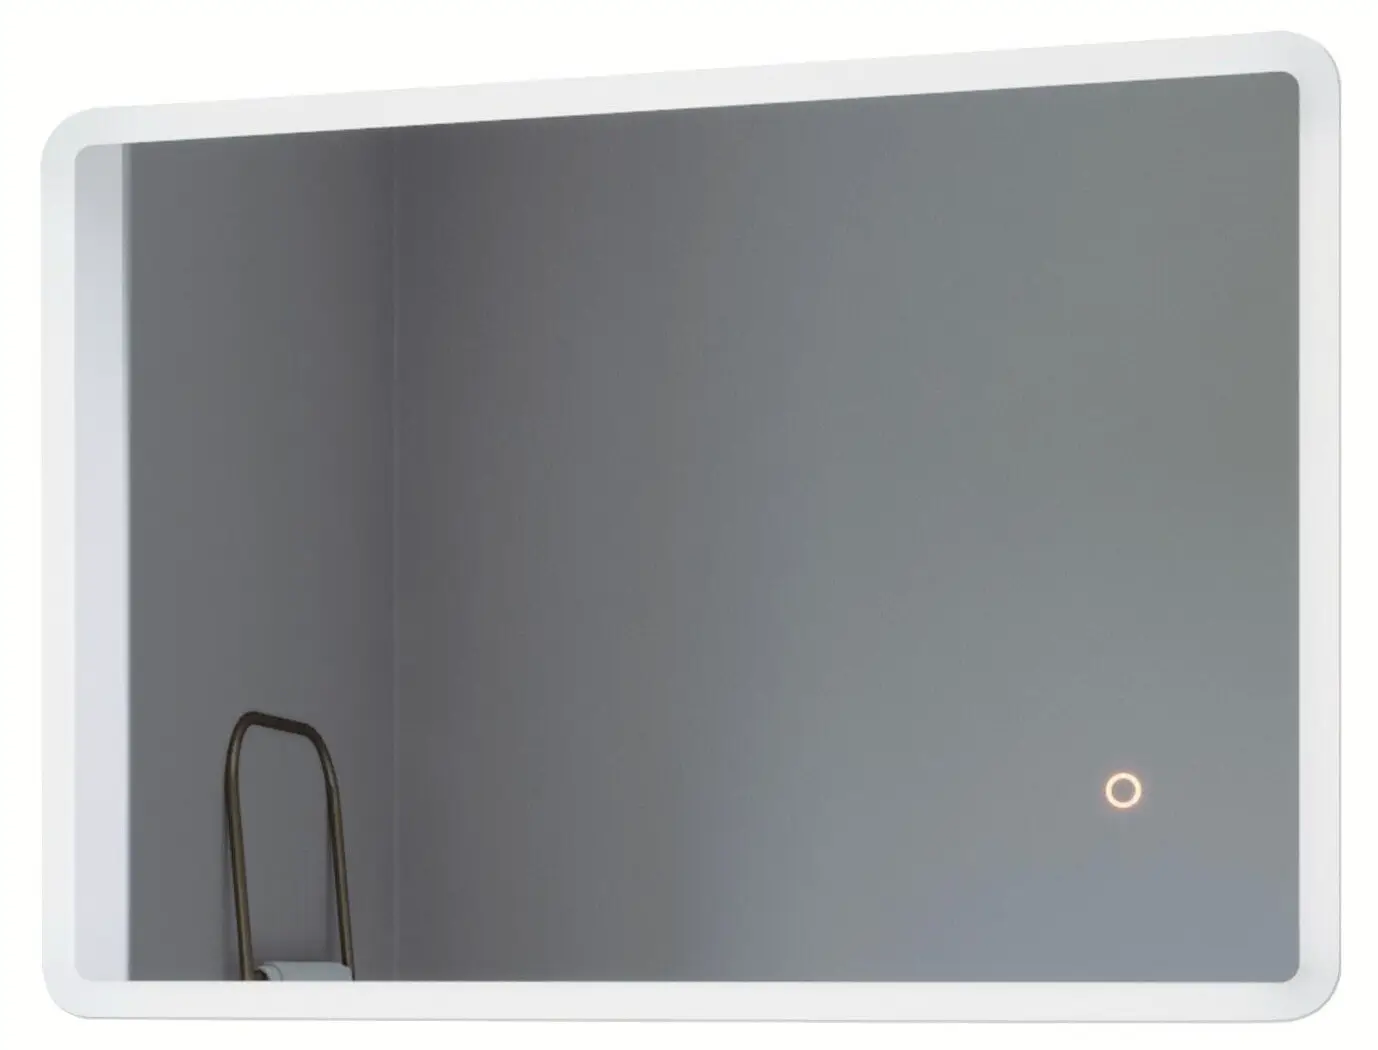 LED Badspiegel mit Beleuchtung BORAS | Wandspiegel